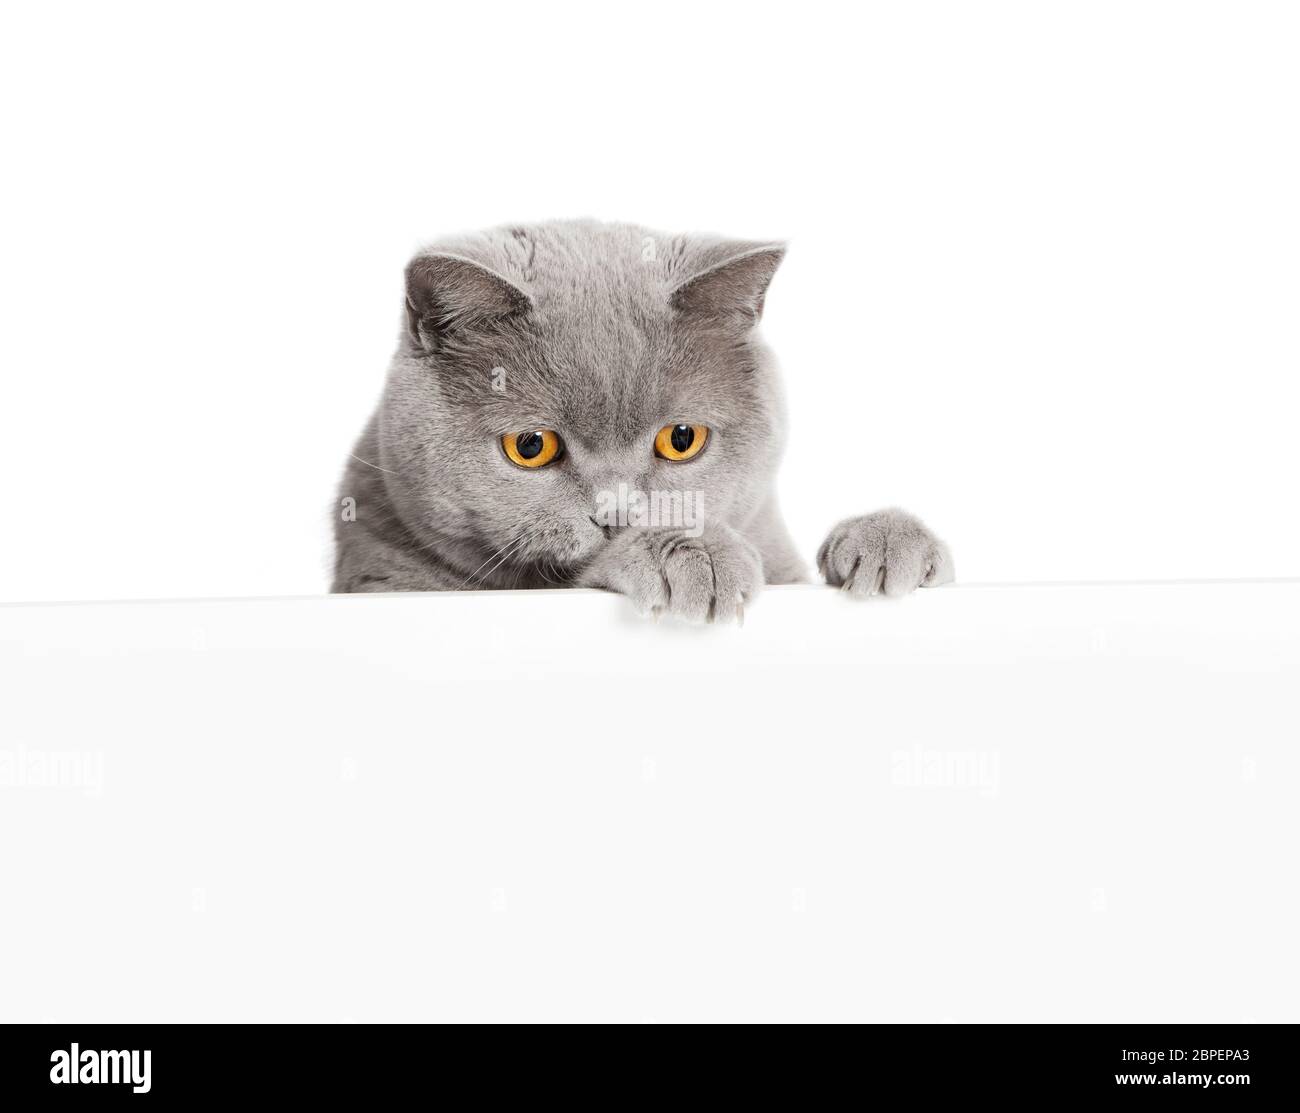 Eine graue britisch Kurzhaar Katze schaut über einen weissen Vordergrund ohne Testo, freigestellt Foto Stock